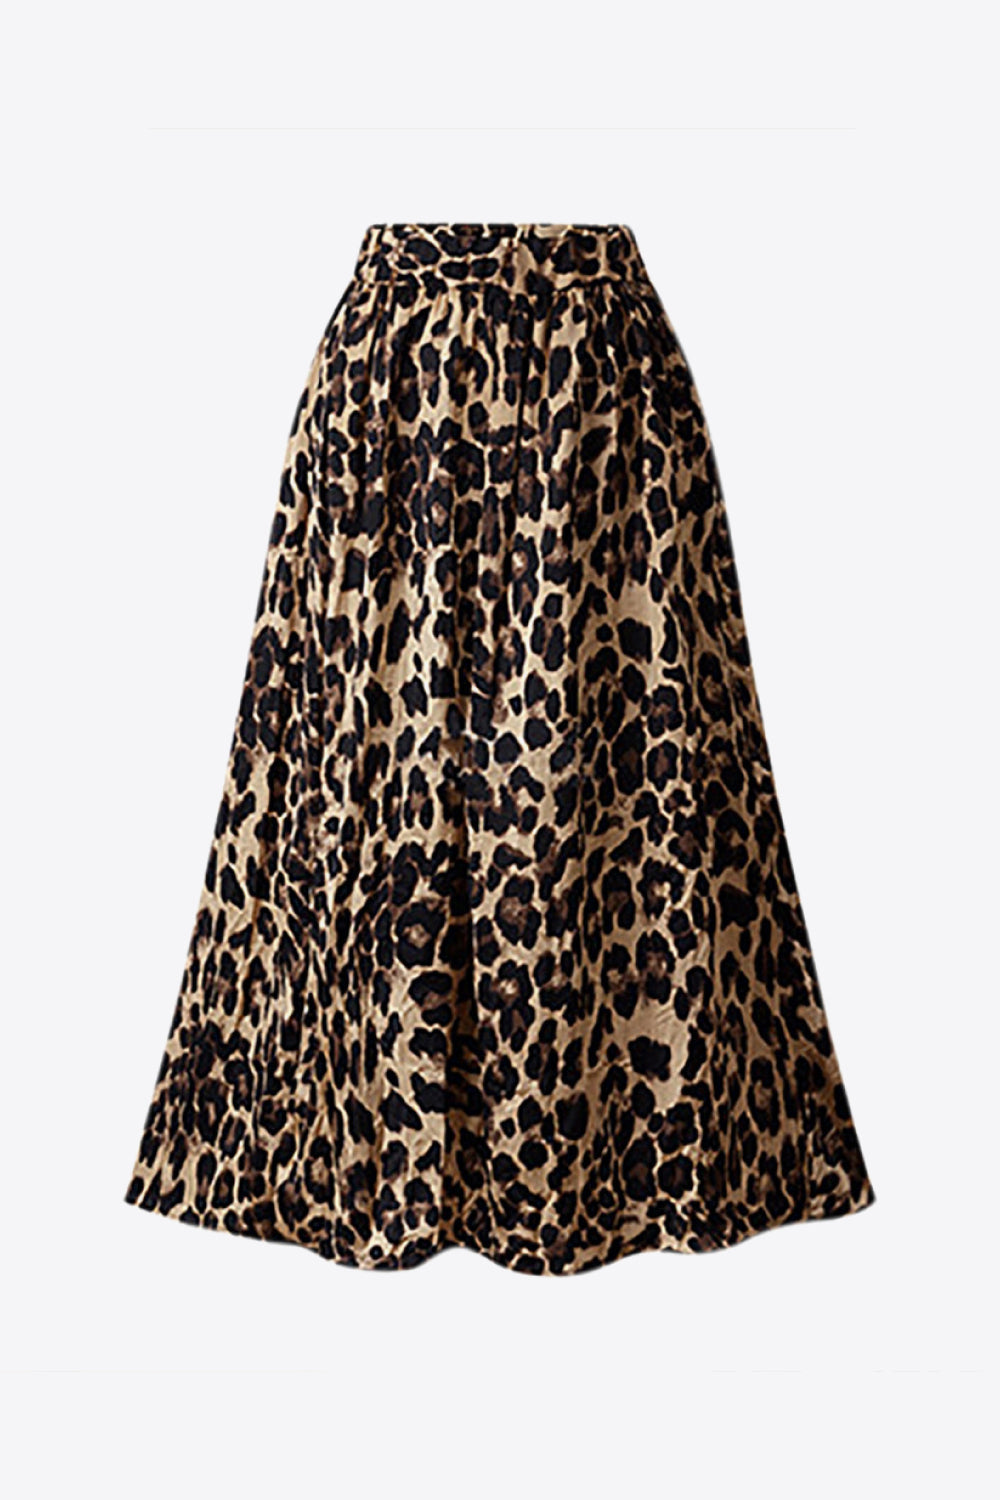 Plus Size Leopard Print Midi Skirt - Leopard / L - Bottoms - Skirts - 1 - 2024